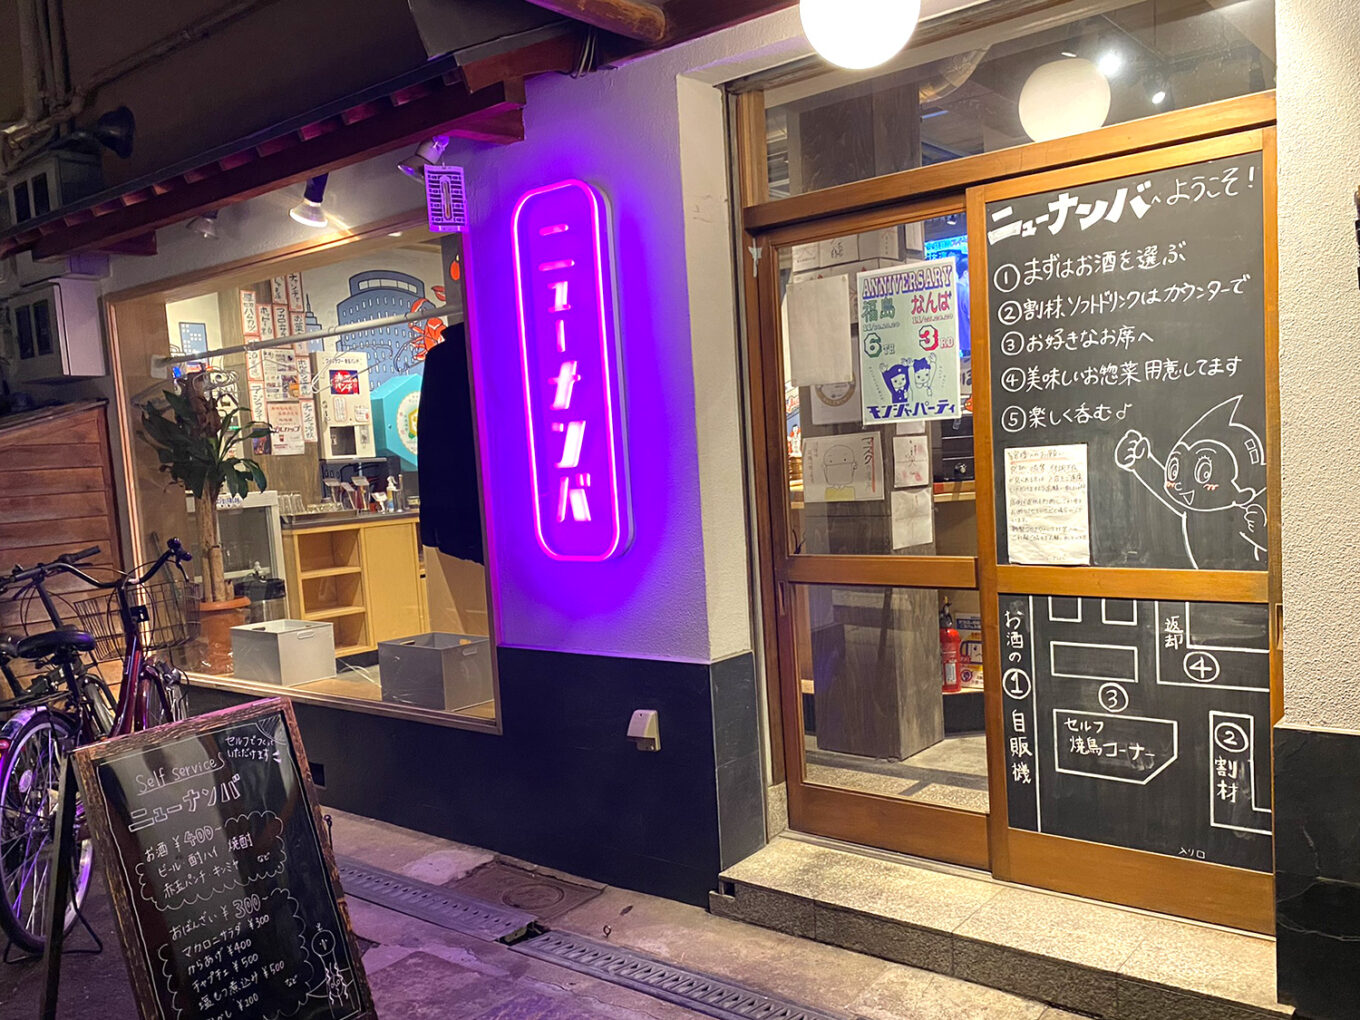 大阪 難波 ニューナンバ お酒の自販機が楽しい セルフ式の気軽な立ち飲み居酒屋 せんべろnet